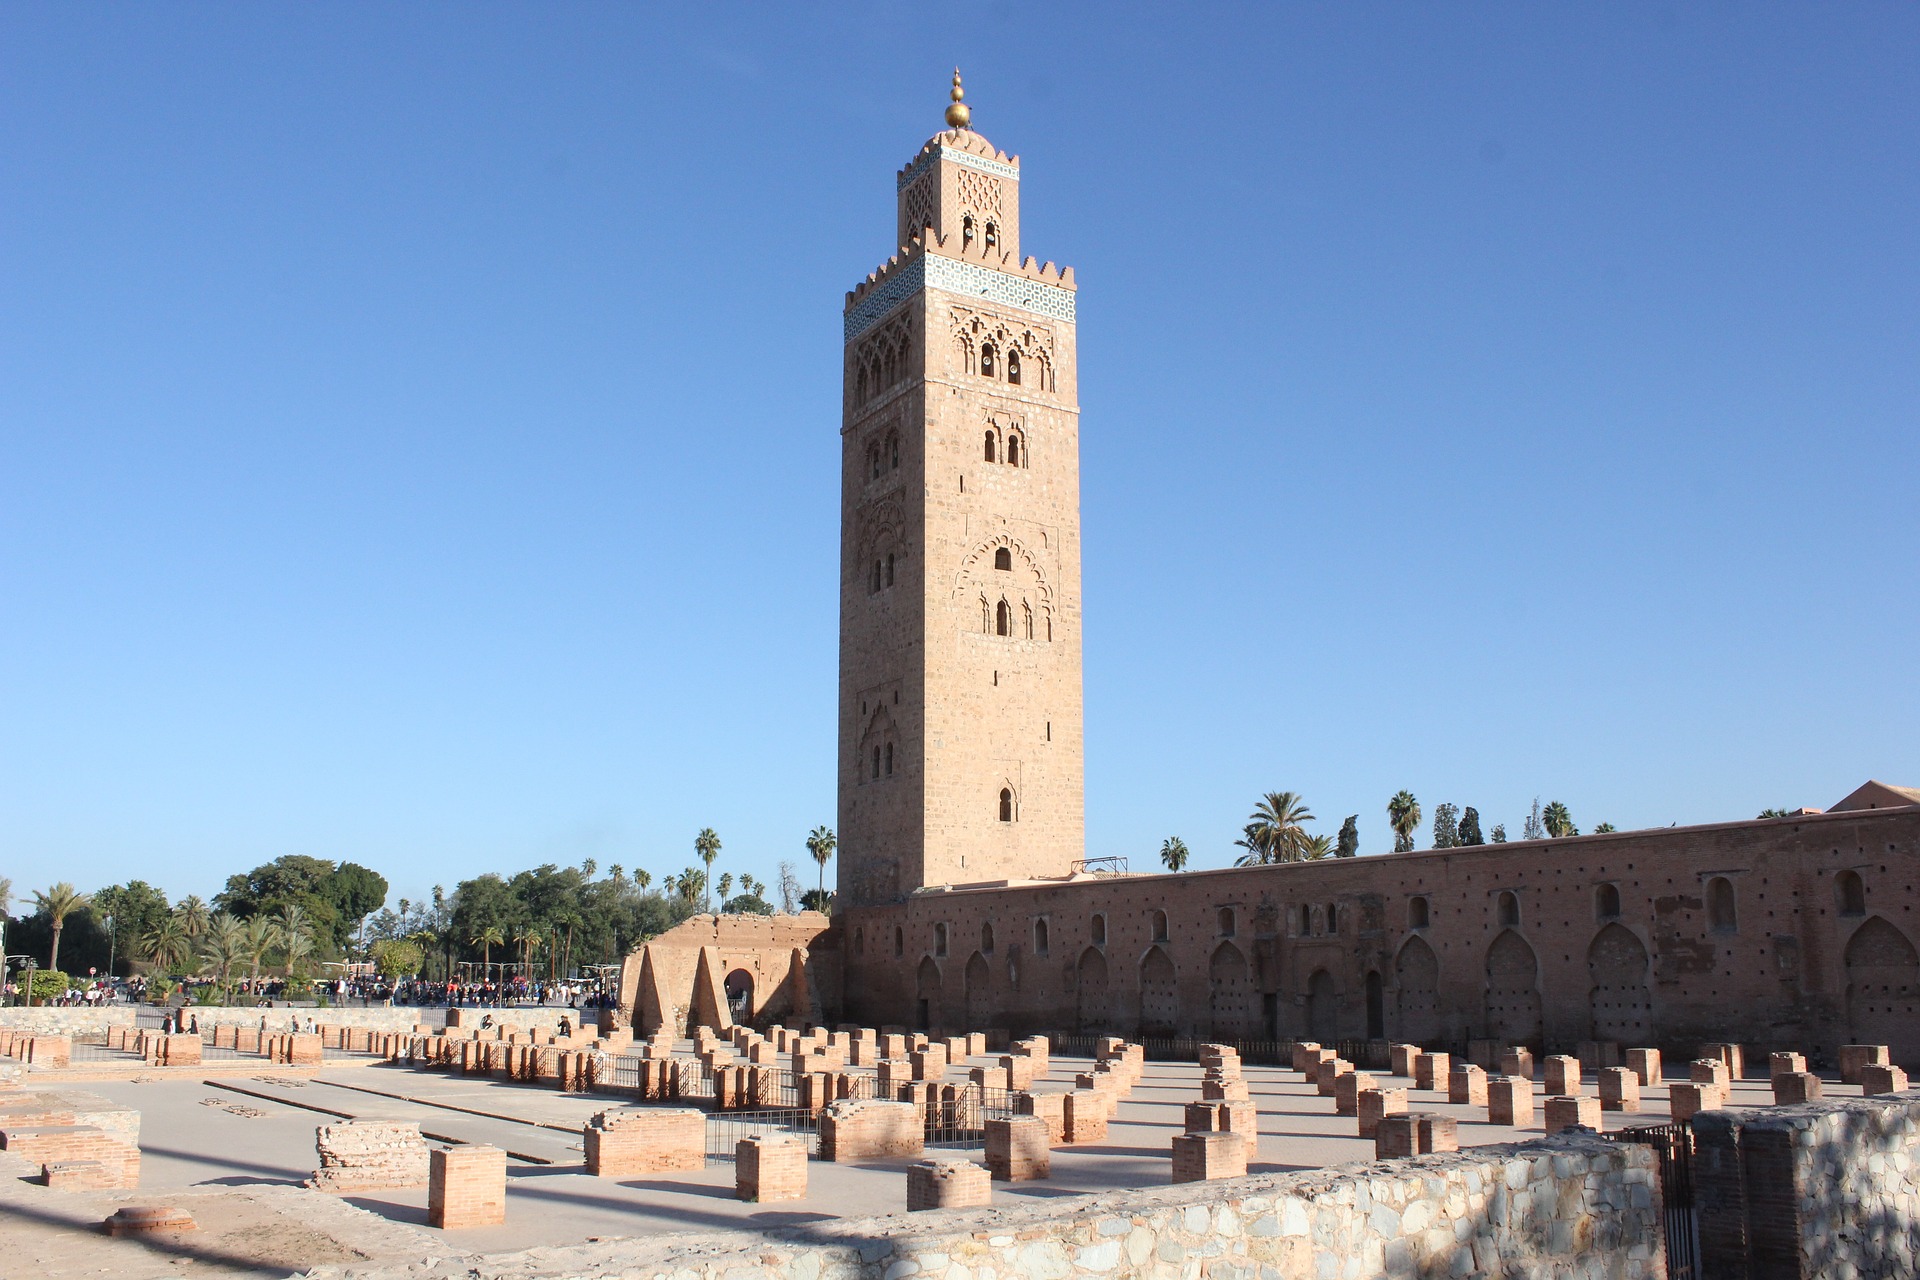 Day 14: Casablanca - Marrakech